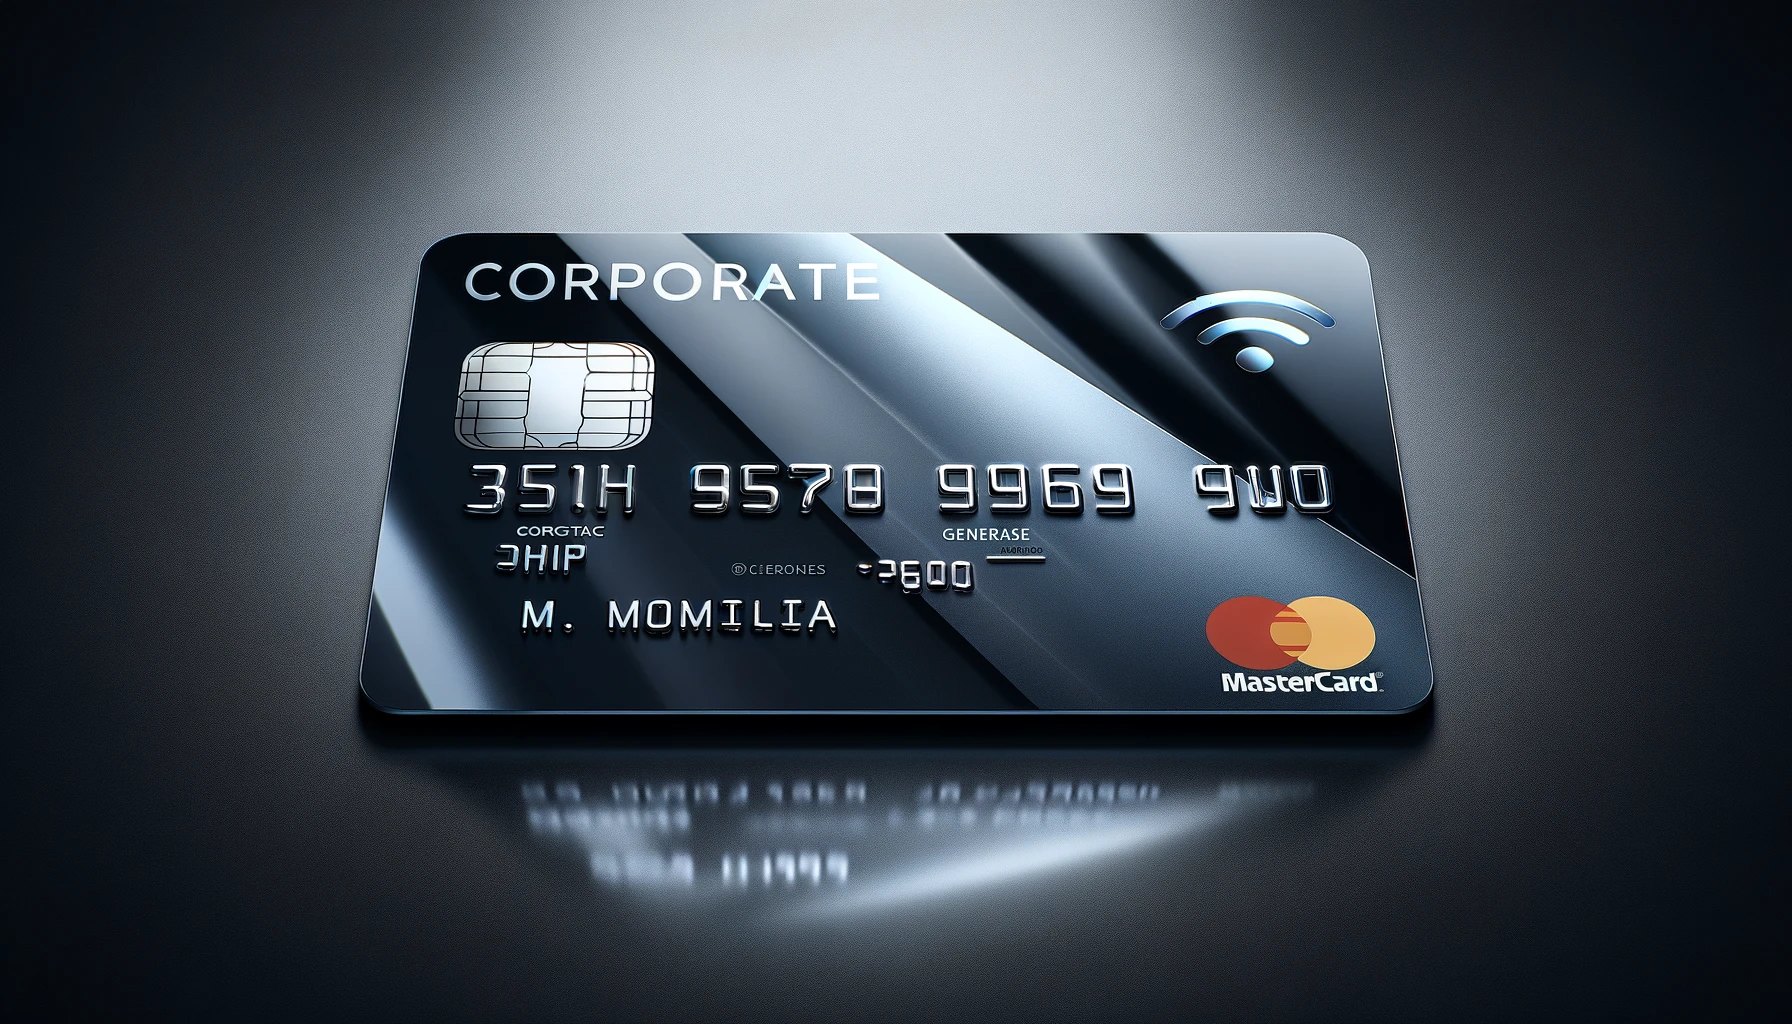 Cartão corporativo com chip e logotipo Mastercard.